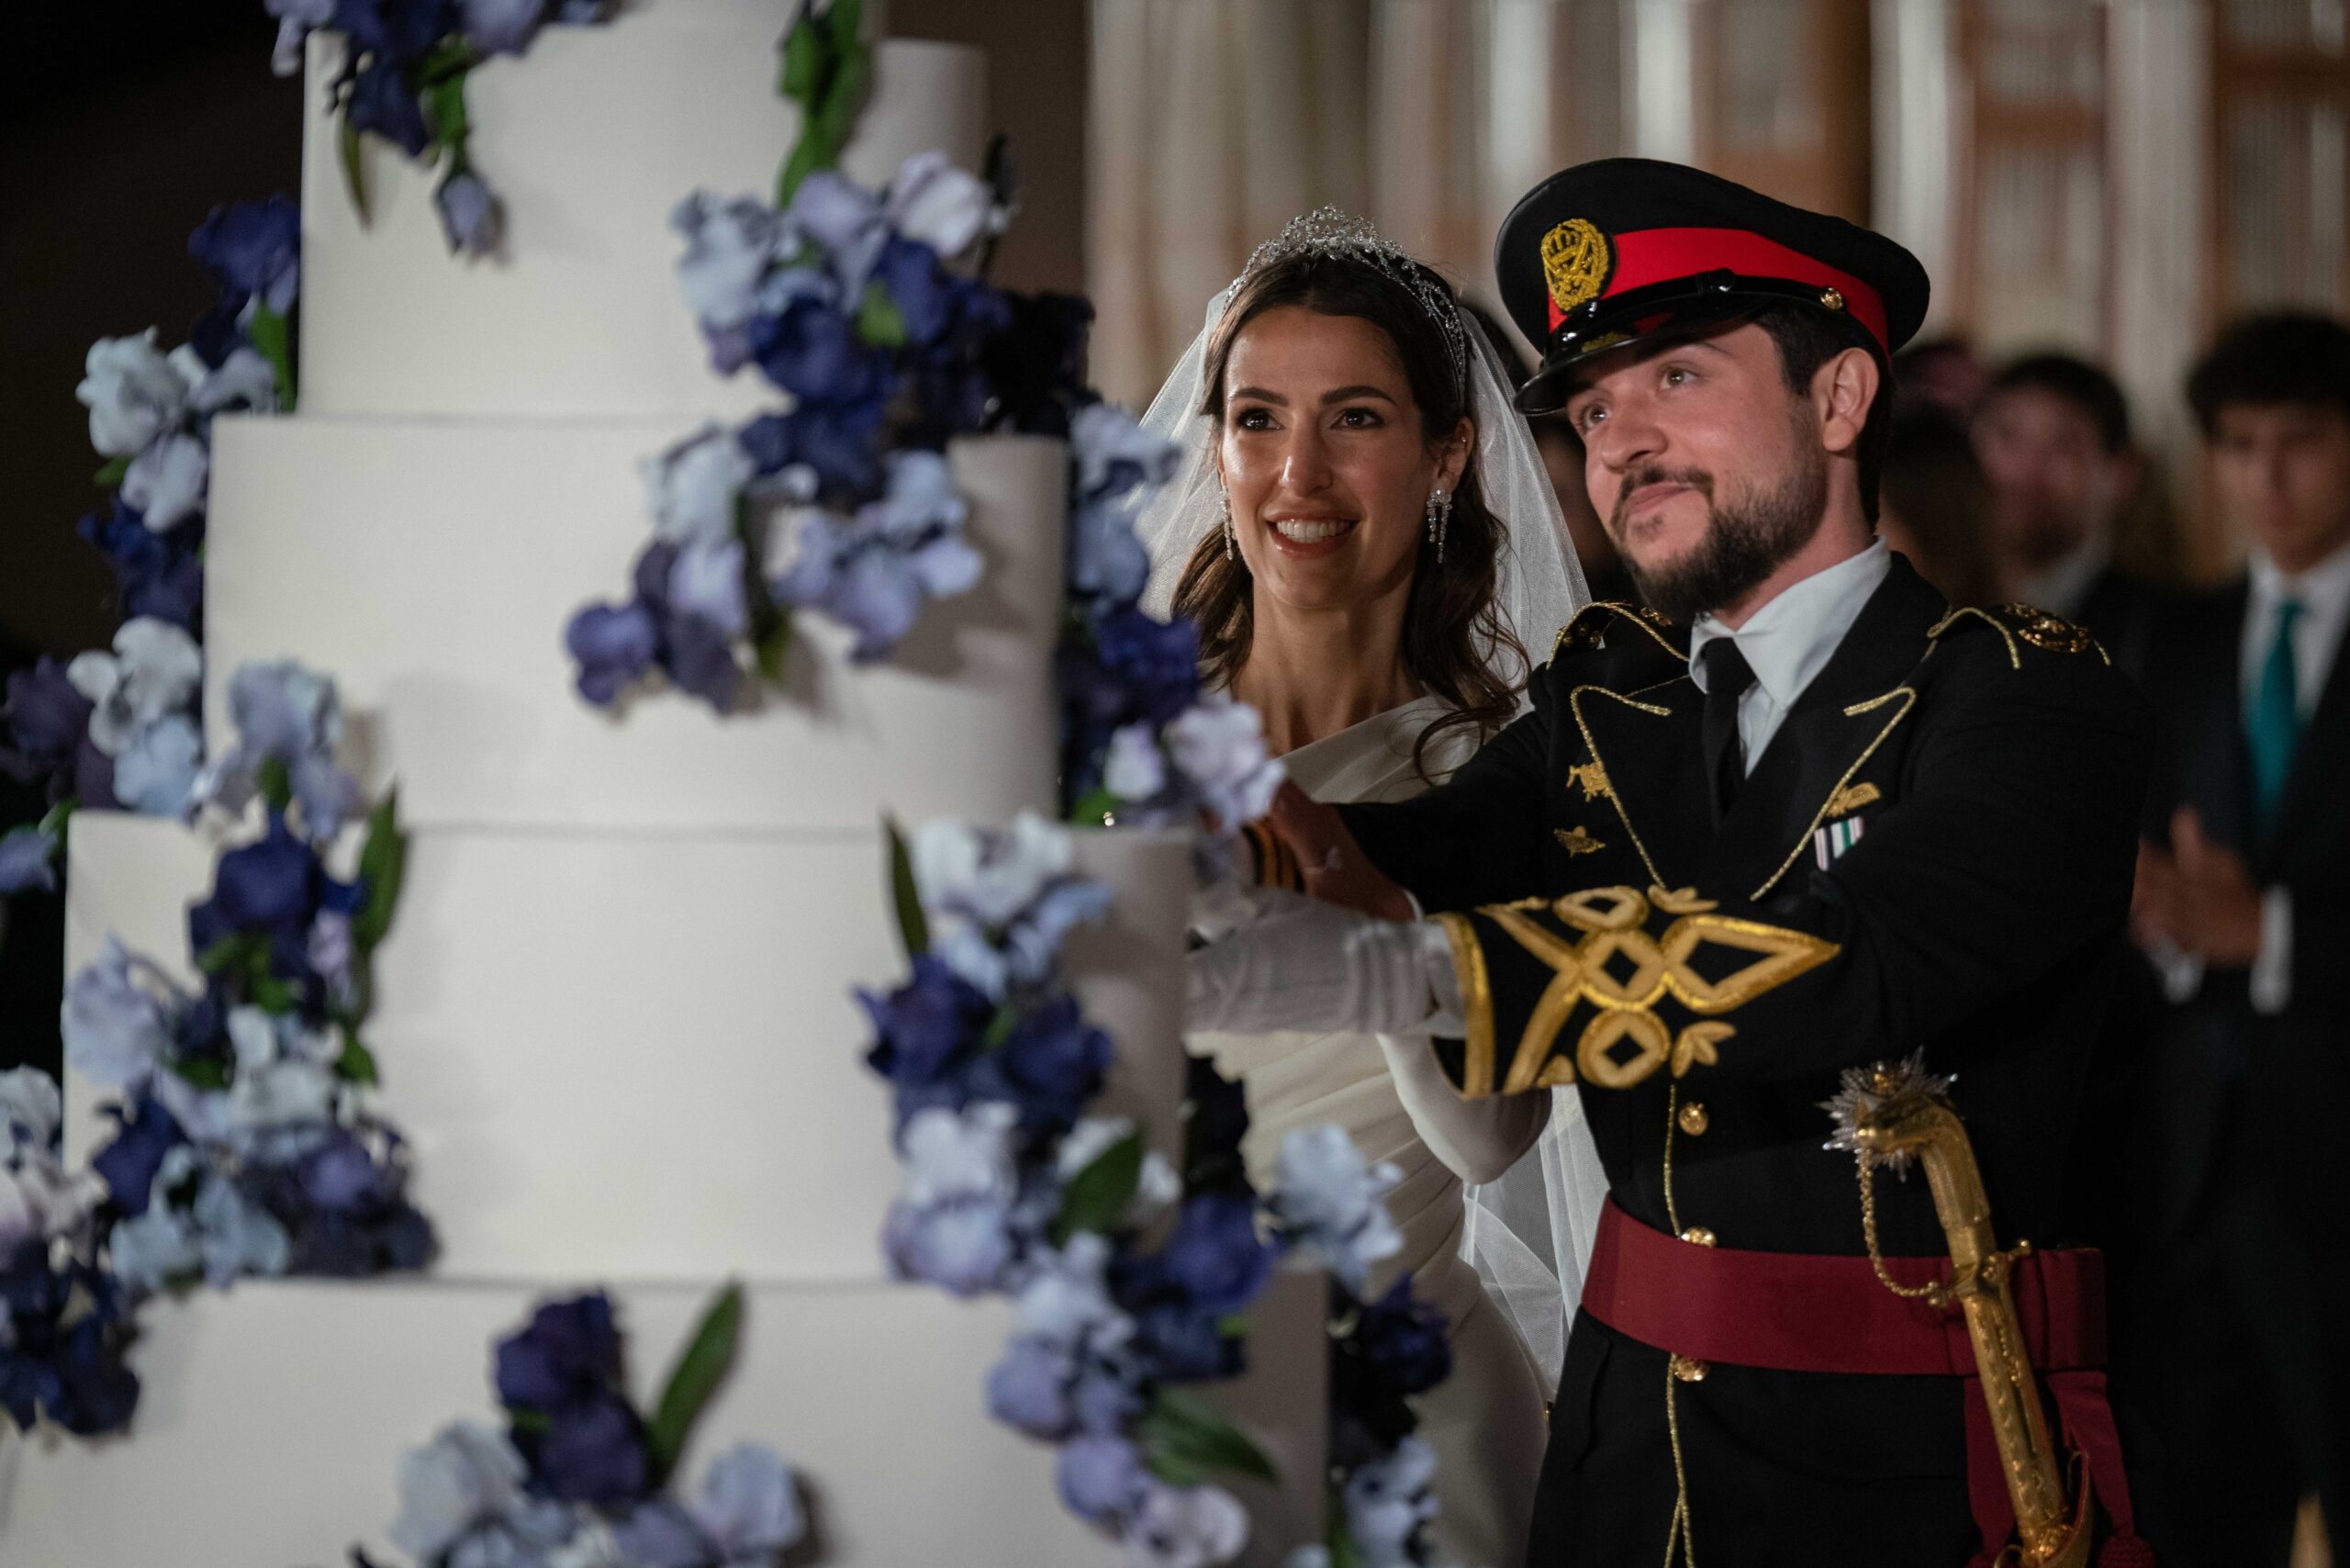 королівське весілля йорданія принц хусейн раджва аль саїф син королева ранія